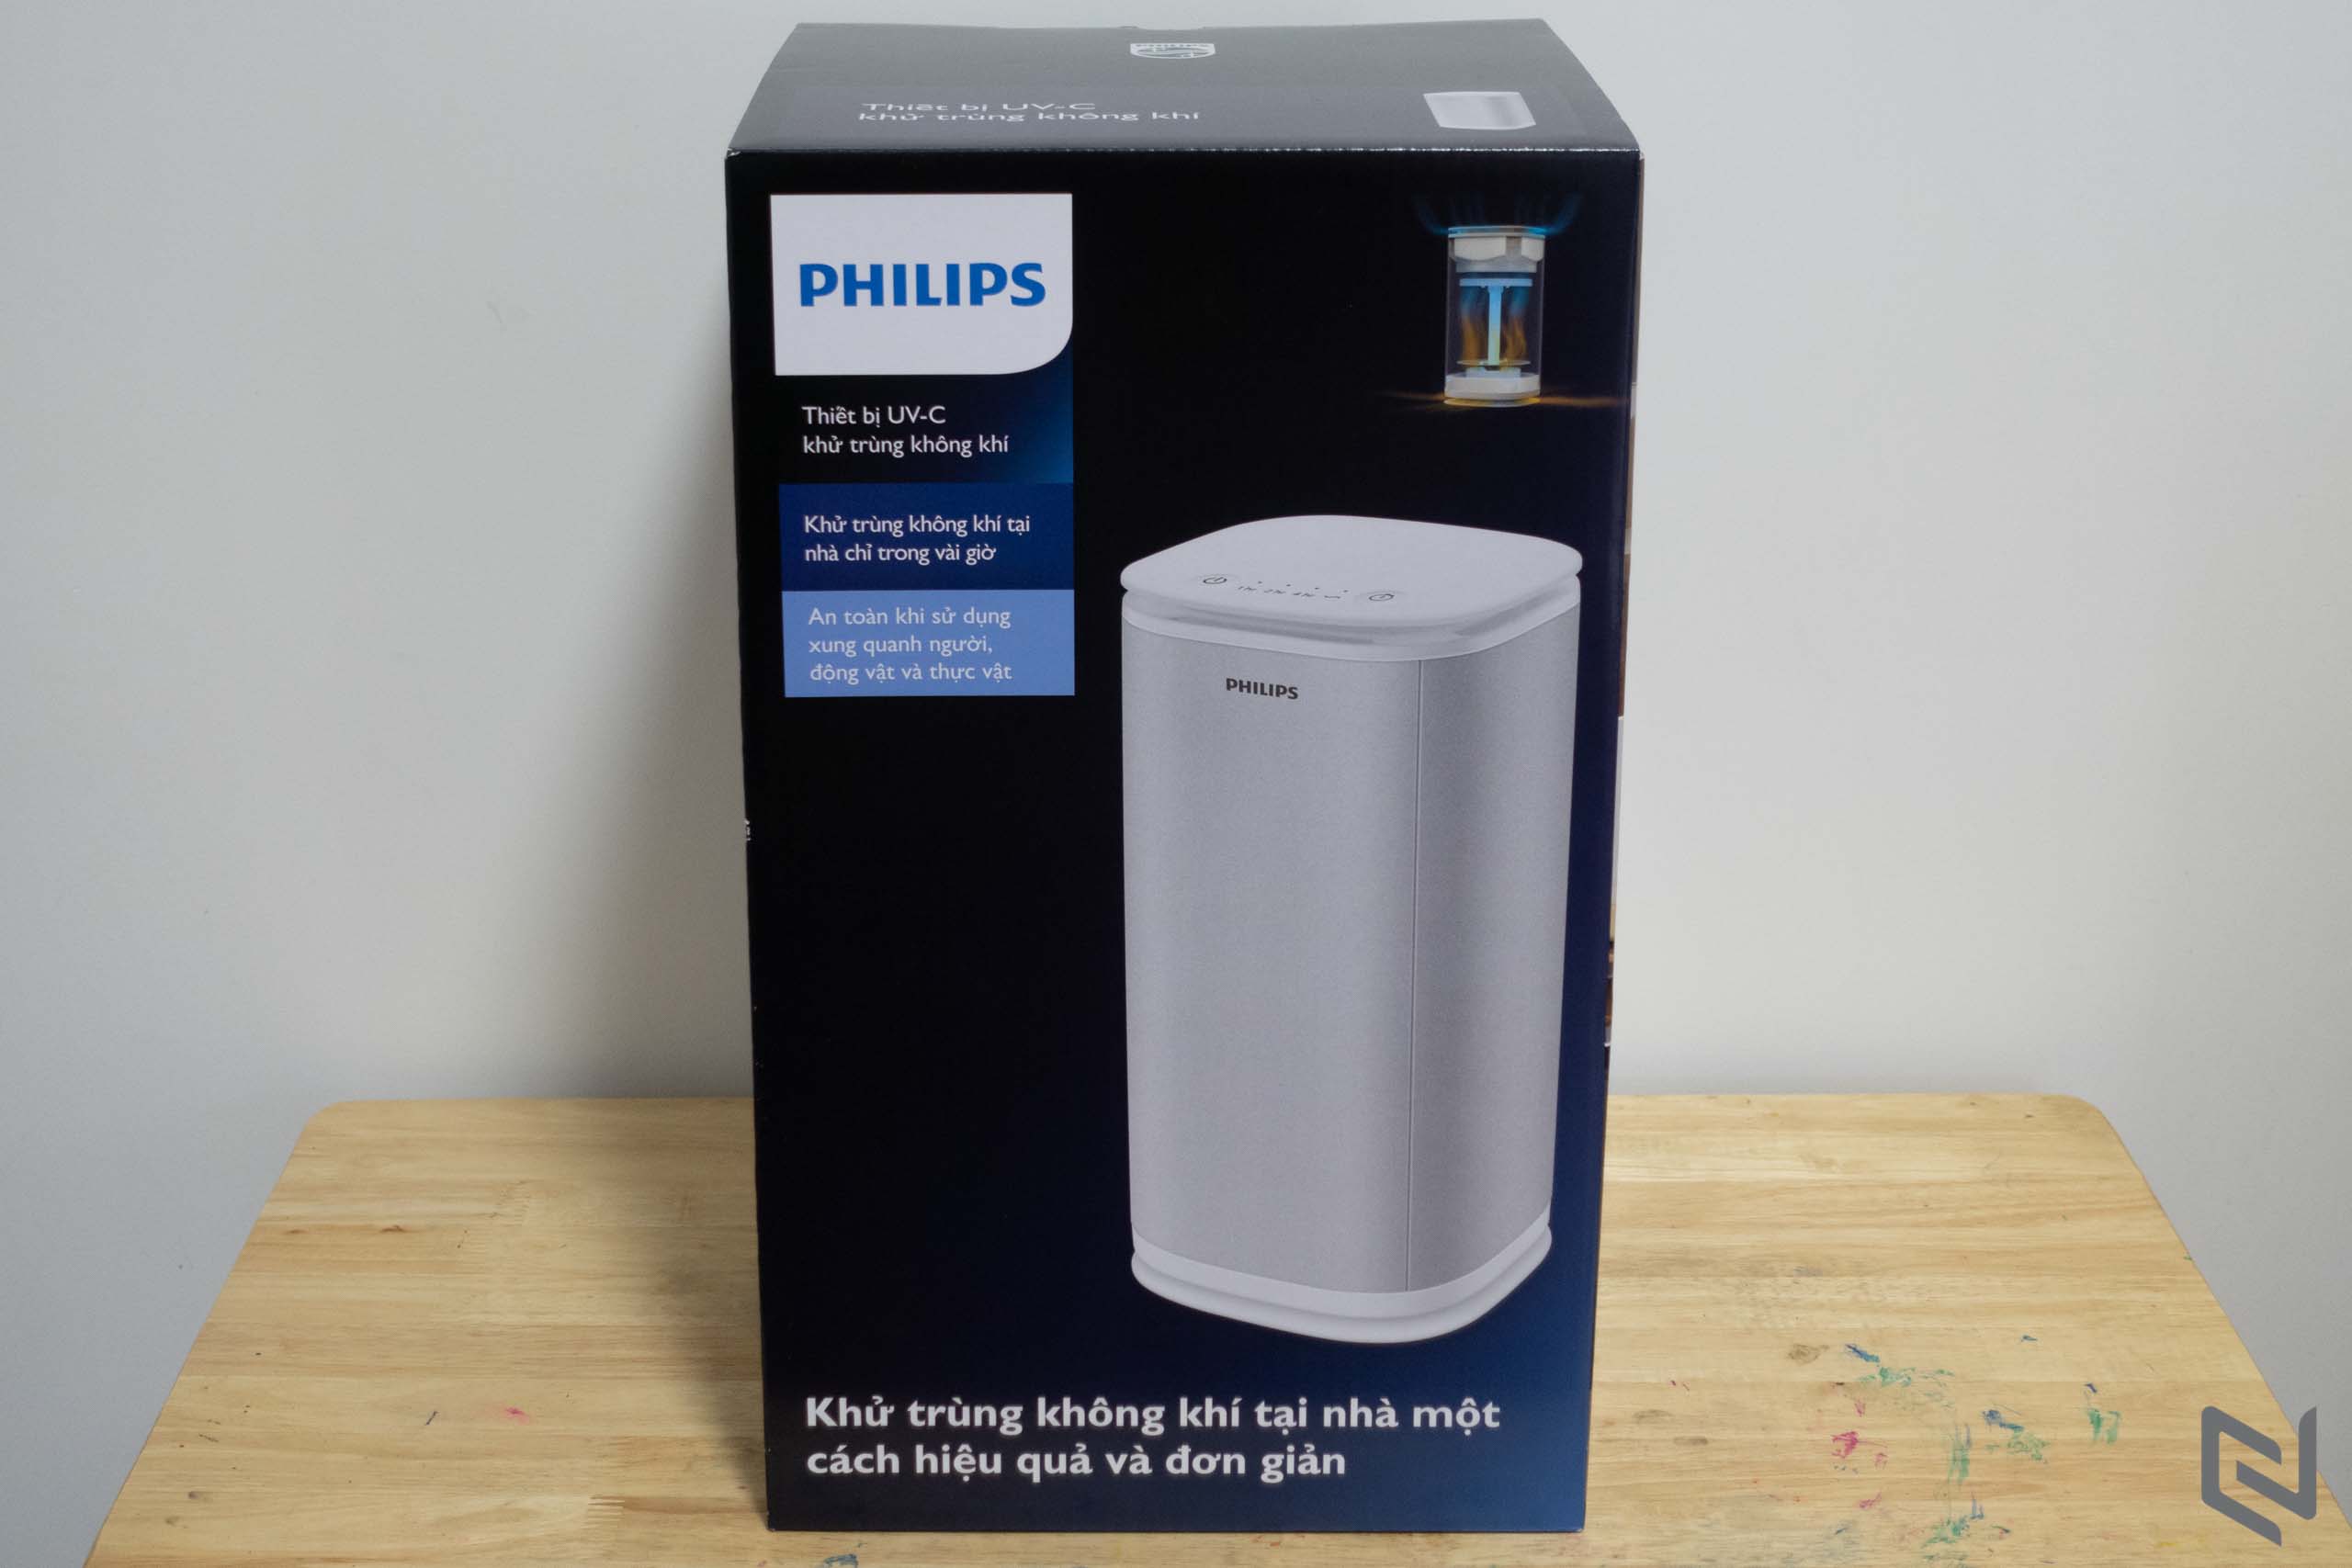 Mở hộp máy khử trùng không khí Philips UV-C: Nhỏ gọn, hoạt động đơn giản, hiệu quả tức thì